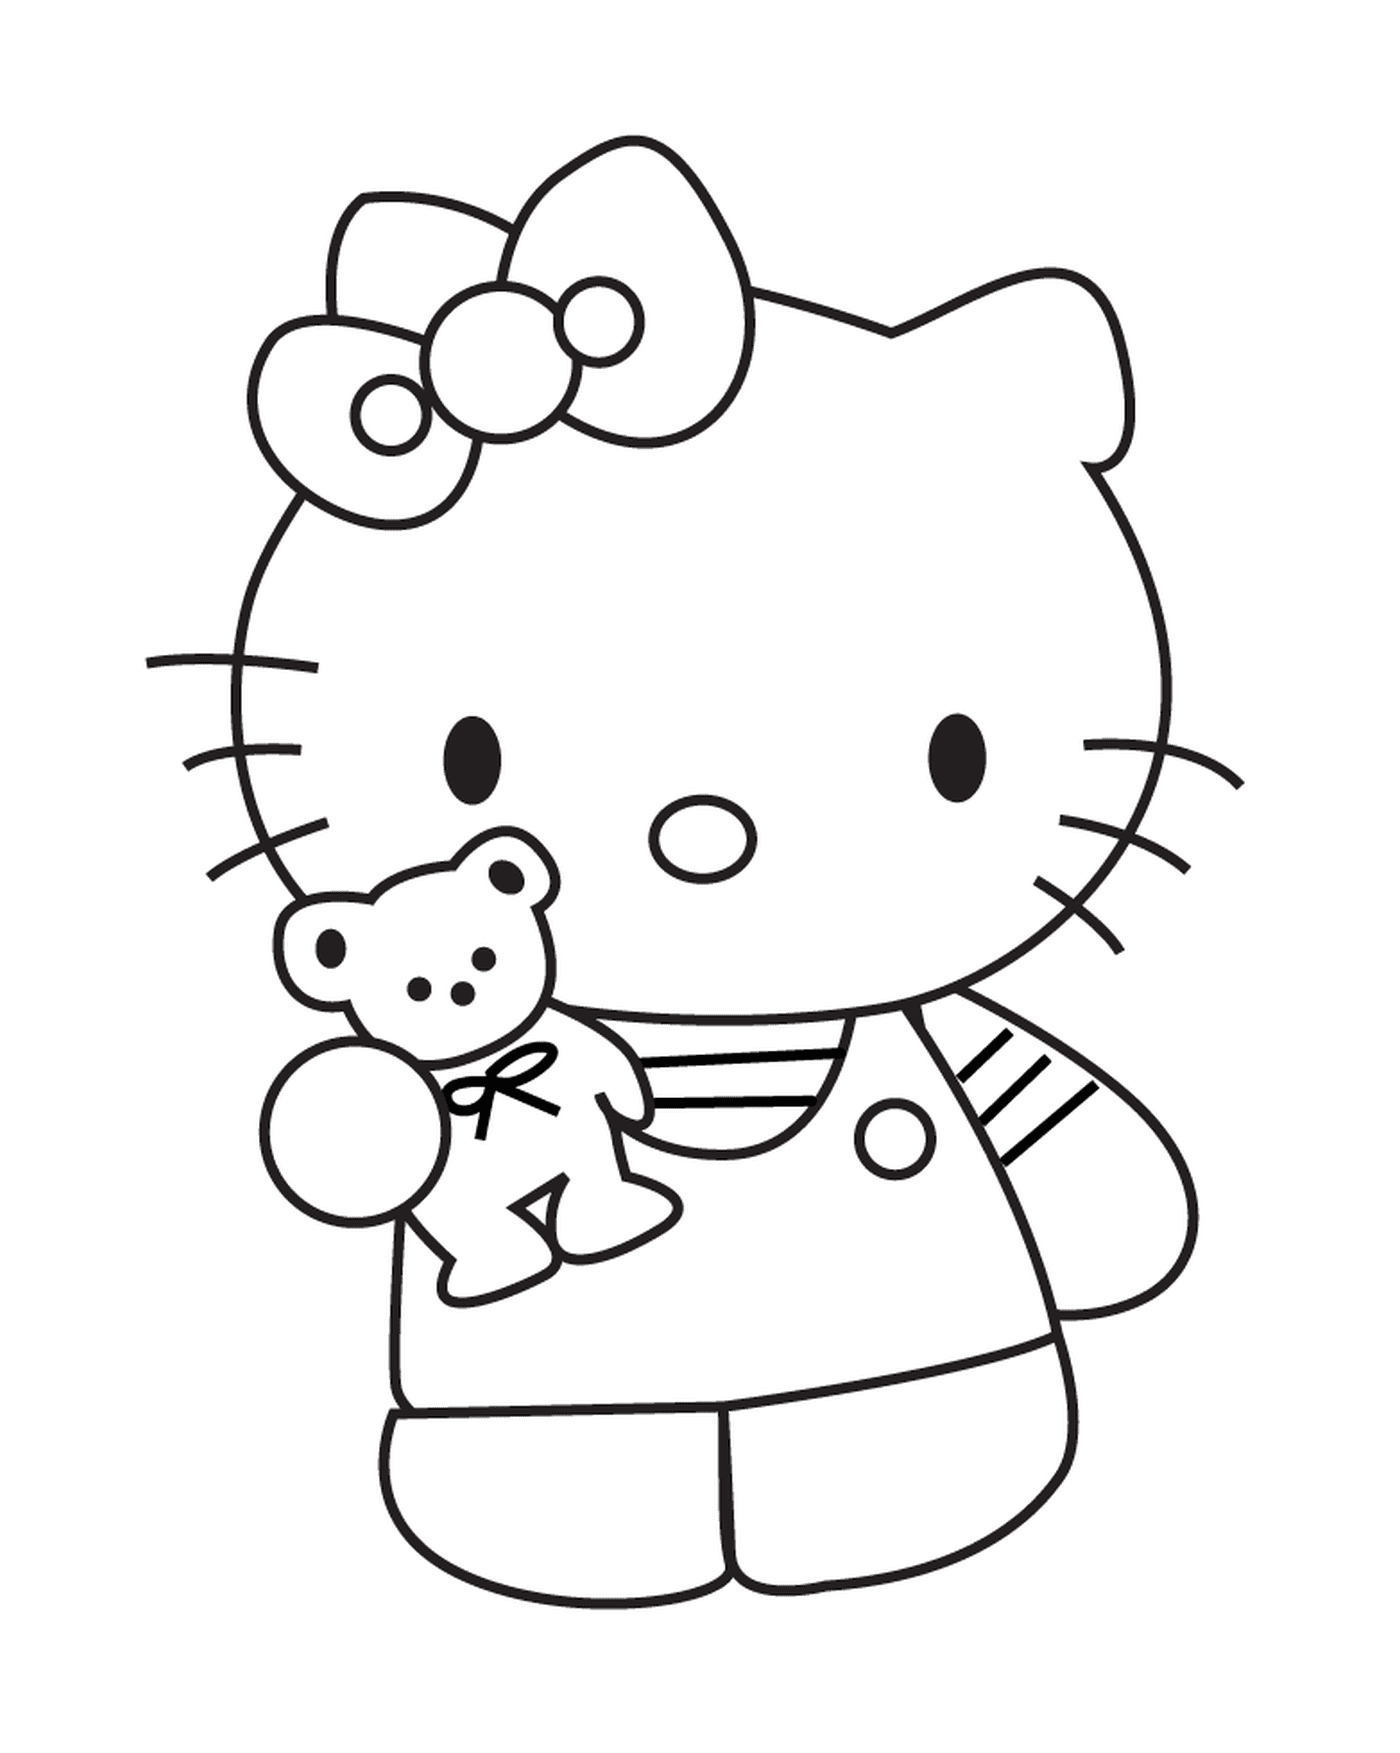  Hello Kitty holding a teddy bear 